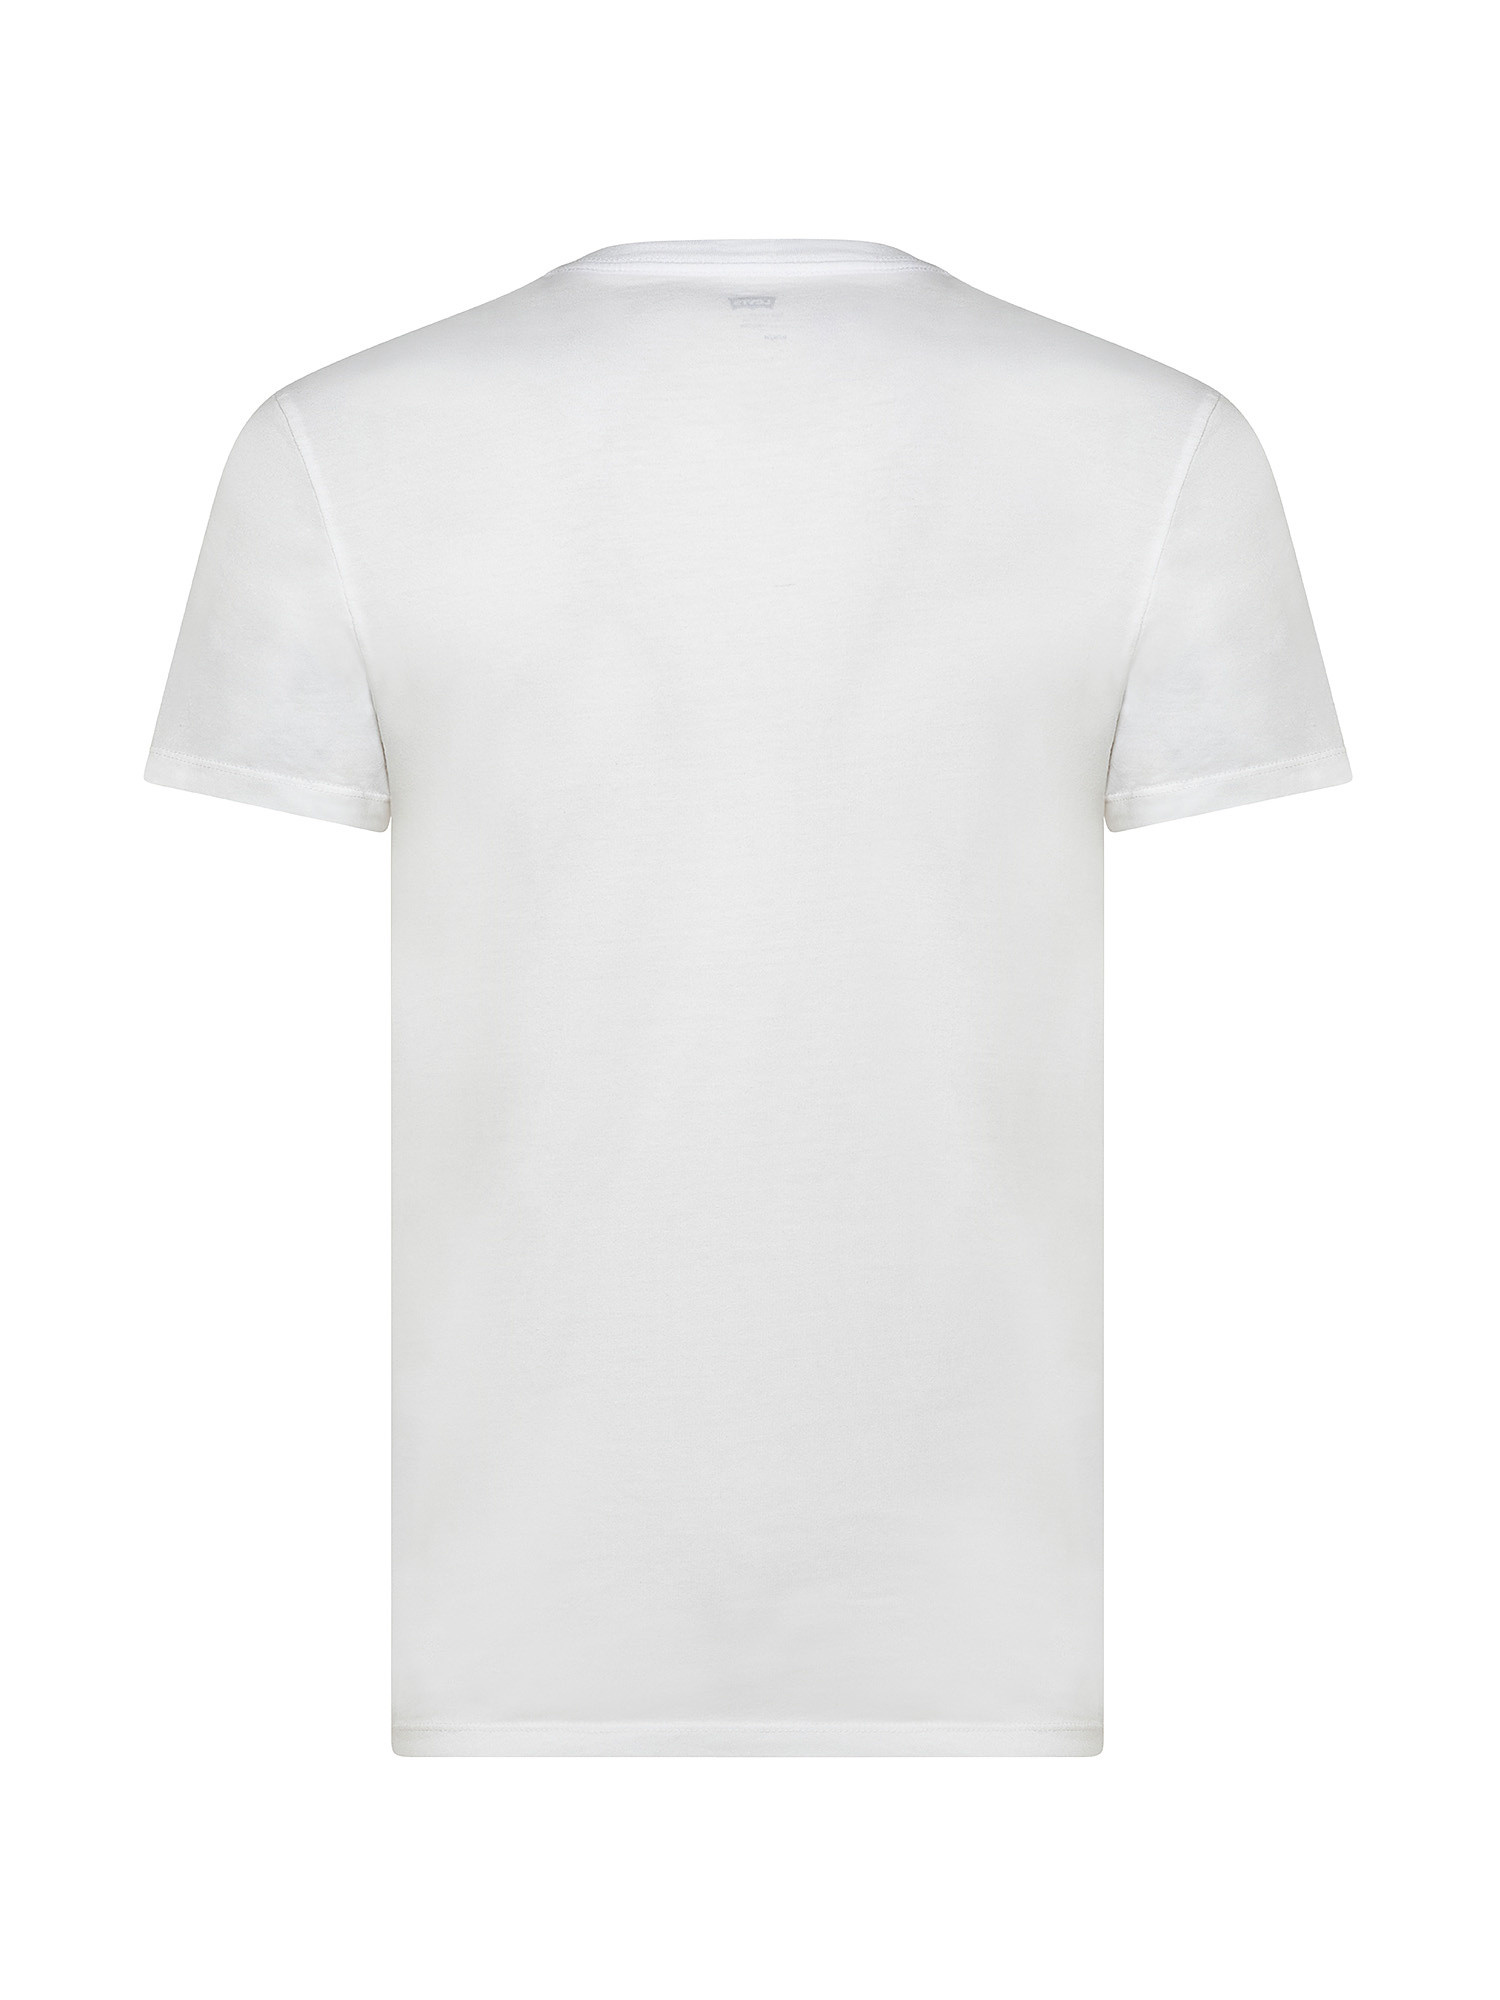 T-shirt a tinta unita, Bianco, large image number 1